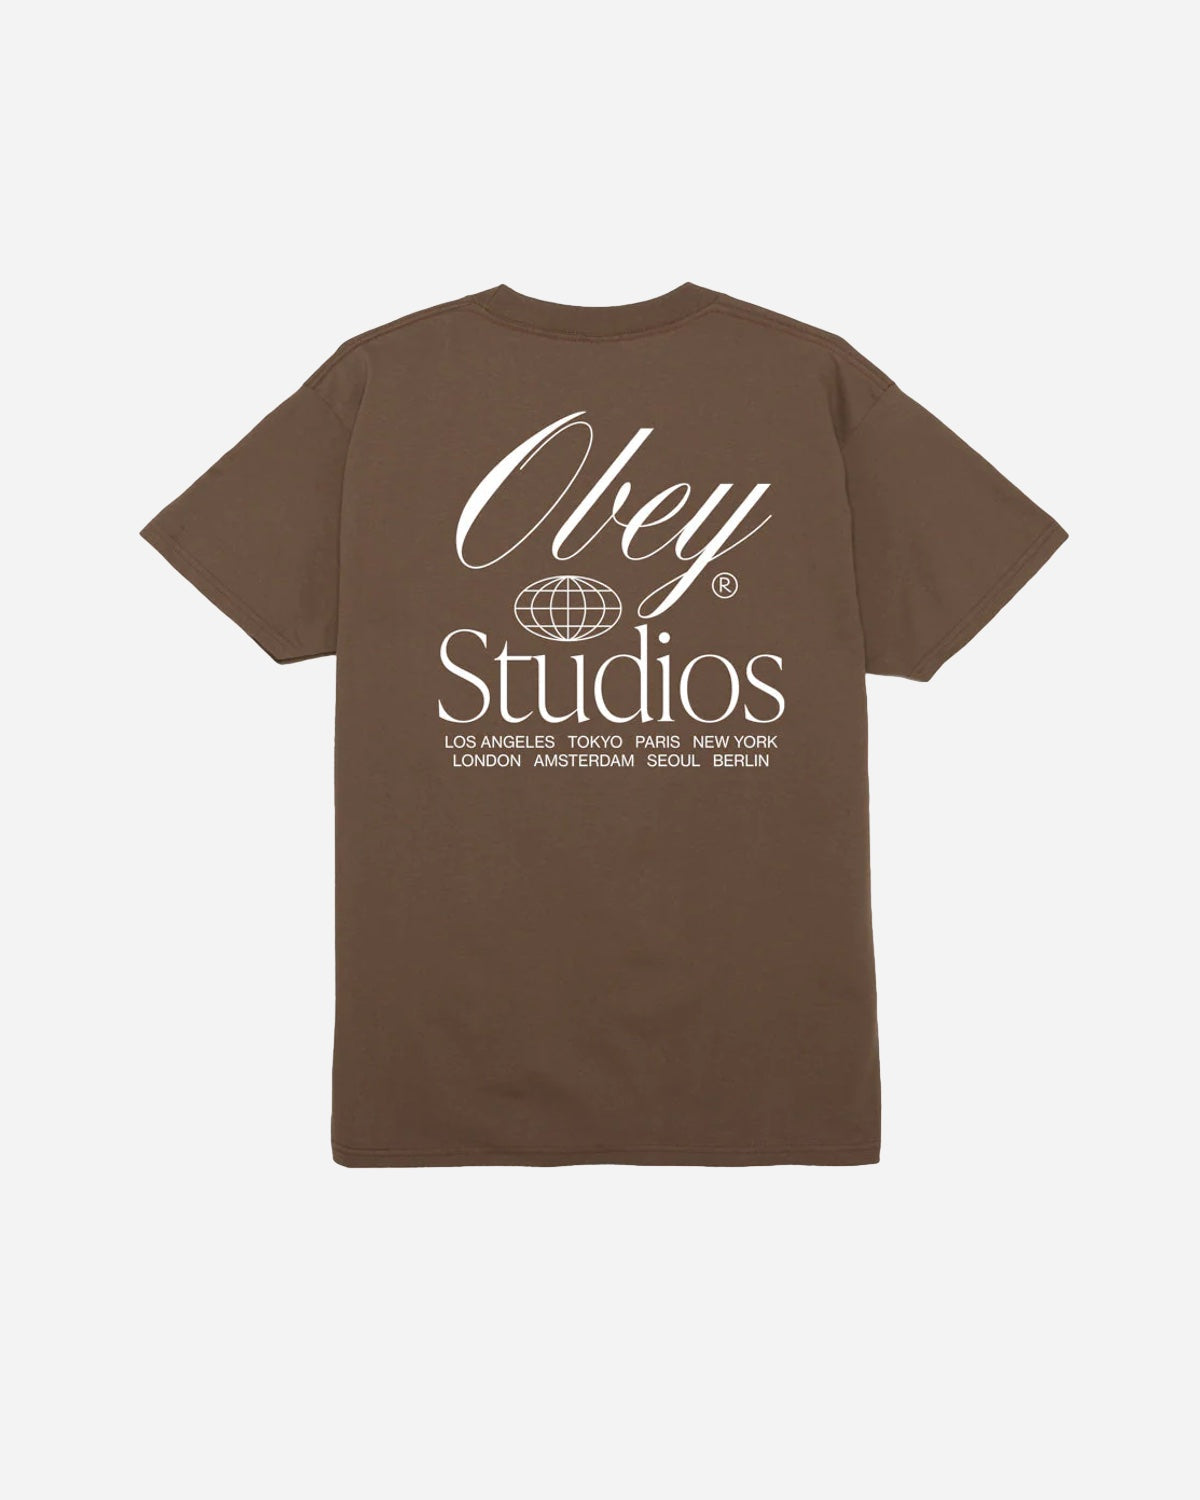 Obey Studios Worldwide - Silt